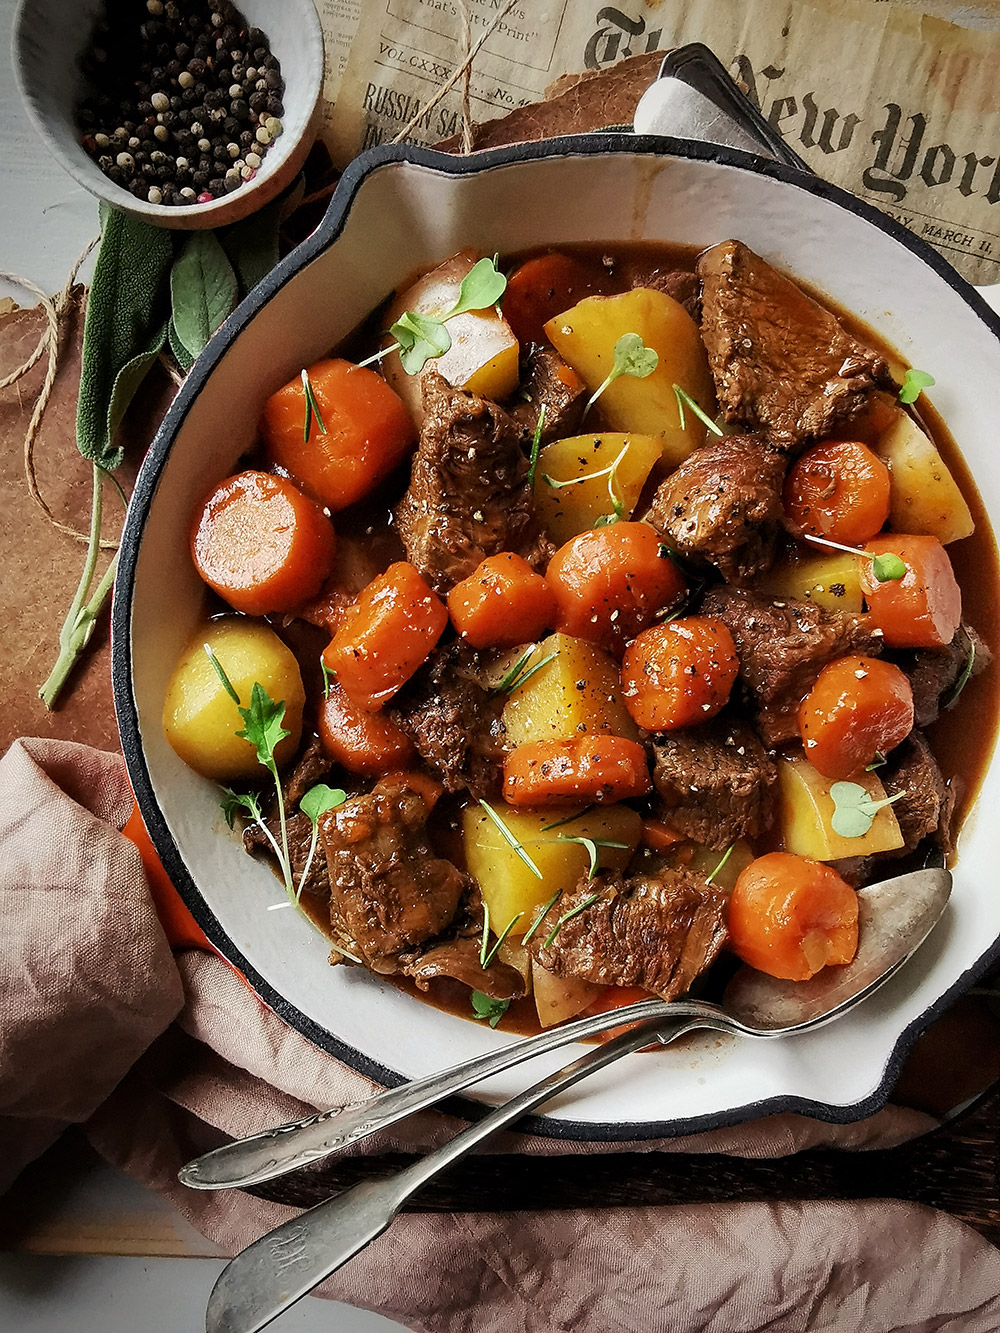 Irish beef stew